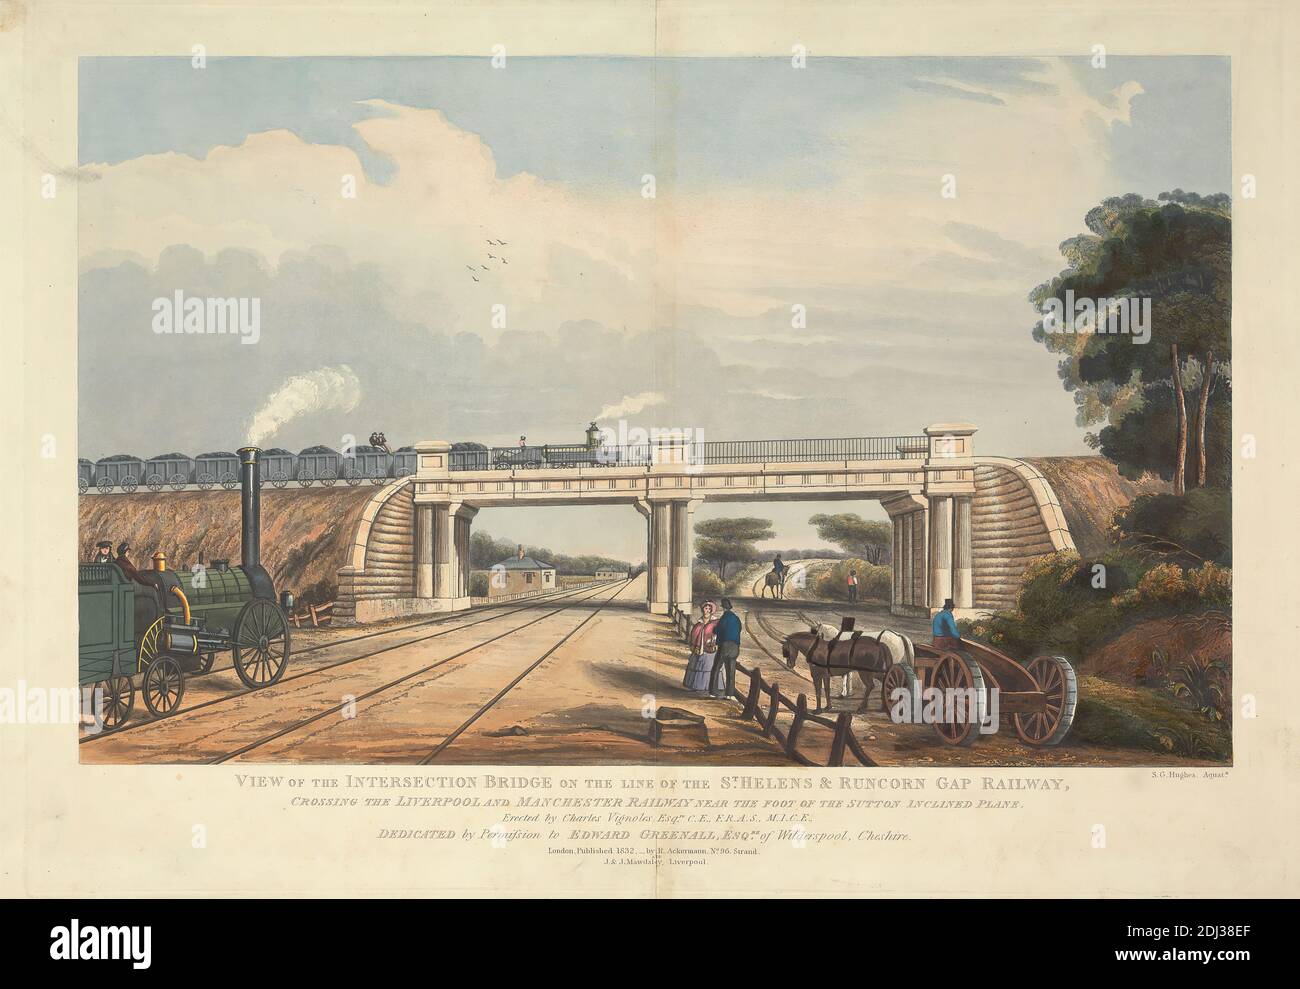 Vista del ponte di intersezione sulla linea di St. Helen's & Runcorn Gap Railway, attraversando la Liverpool e Manchester Railway vicino ai piedi del piano inclinato Sutton, S. G. Hughes, attivo 1832, dopo artista sconosciuto, 1832, acquatint a mano-colorato Foto Stock